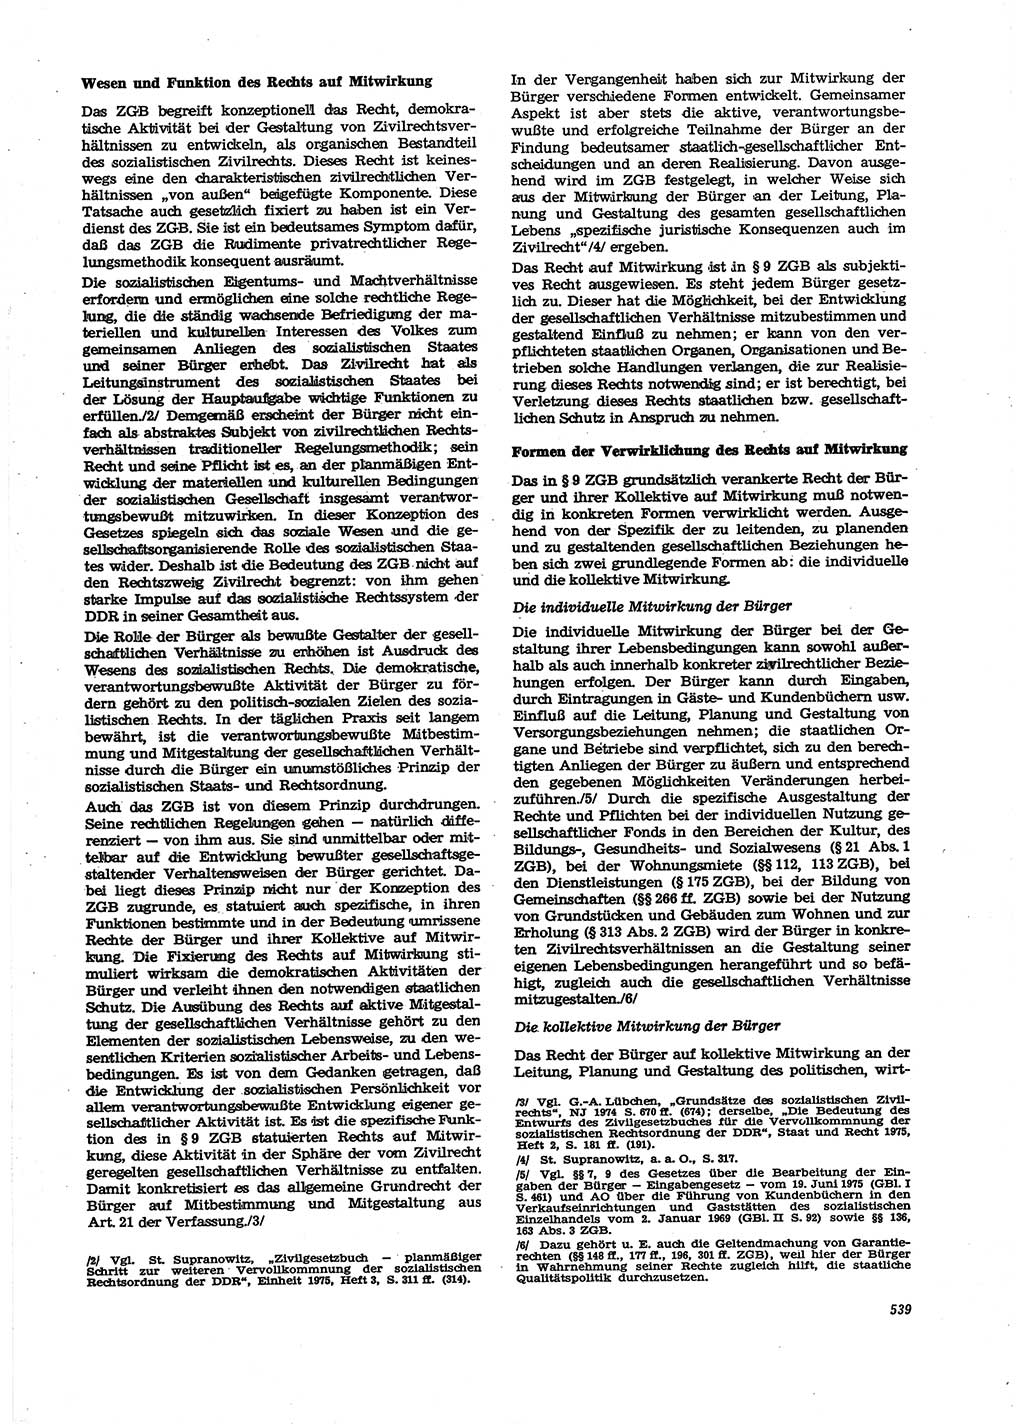 Neue Justiz (NJ), Zeitschrift für Recht und Rechtswissenschaft [Deutsche Demokratische Republik (DDR)], 29. Jahrgang 1975, Seite 539 (NJ DDR 1975, S. 539)